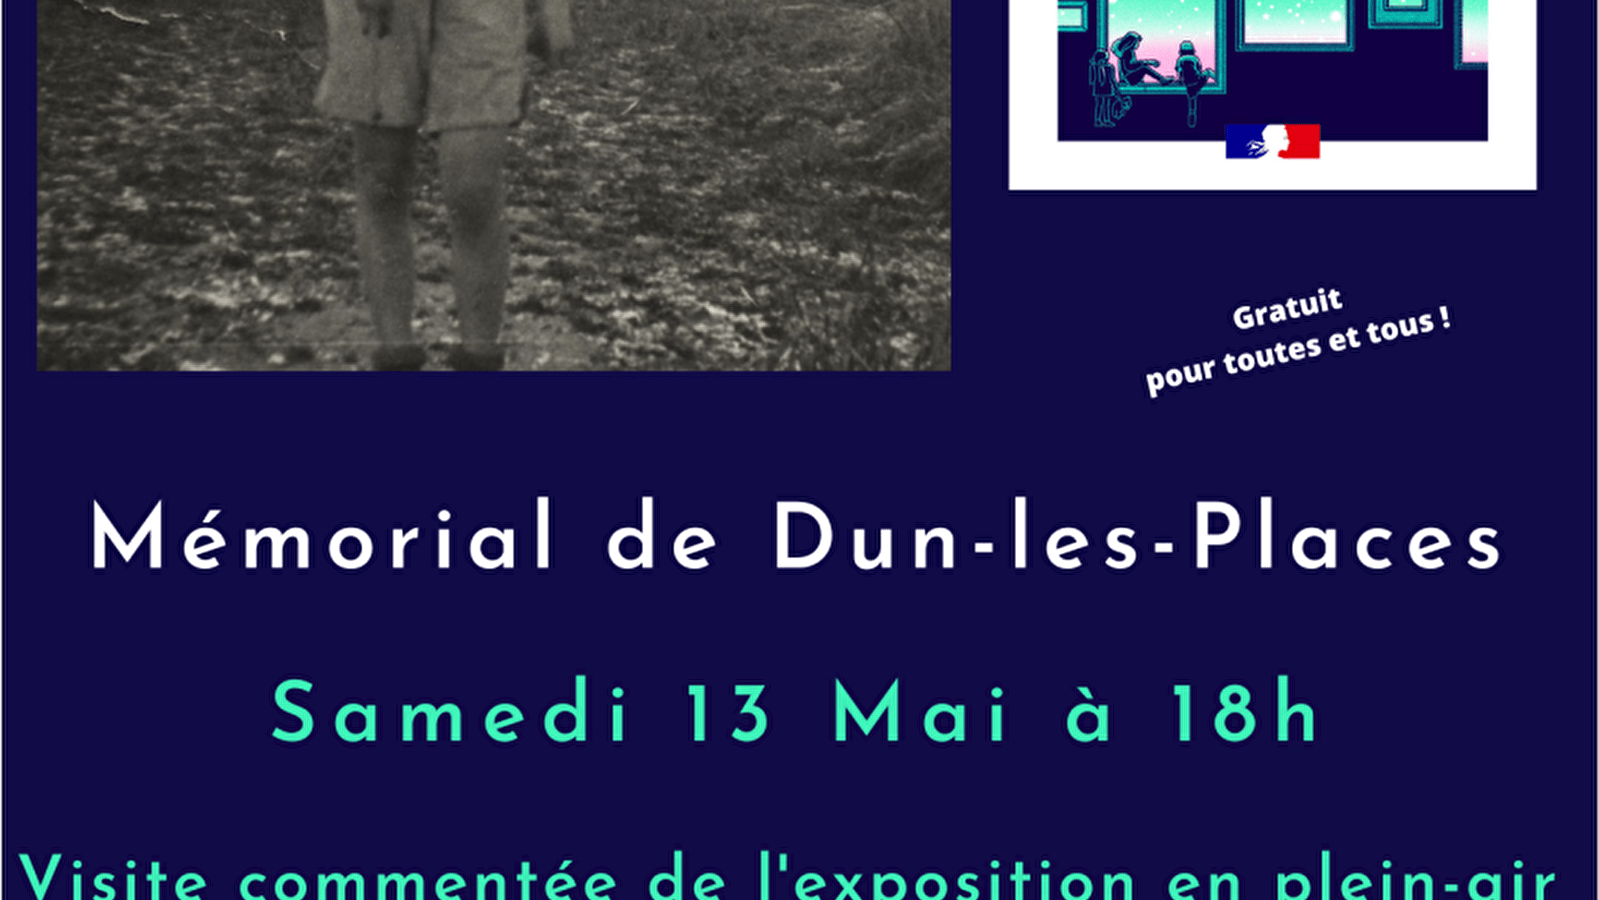 Nuit des musées au Mémorial de Dun-les-Places